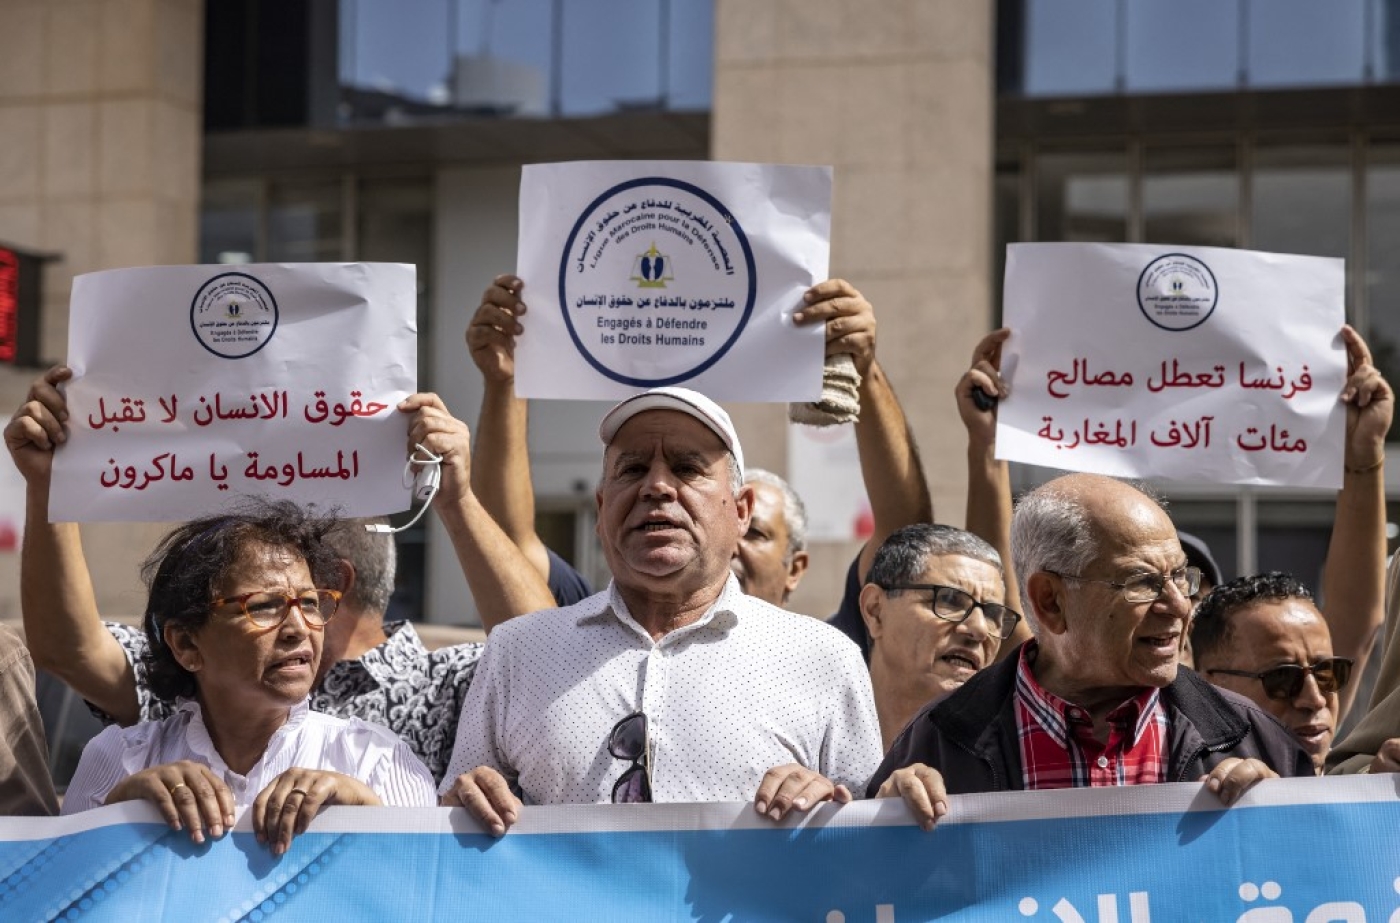 Des militants pour la défense des droits de l’homme manifestent devant les bureaux de l’Union européenne contre la restriction des visas imposée par la France, le 4 octobre 2022 à Rabat (AFP/Fadel Senna)